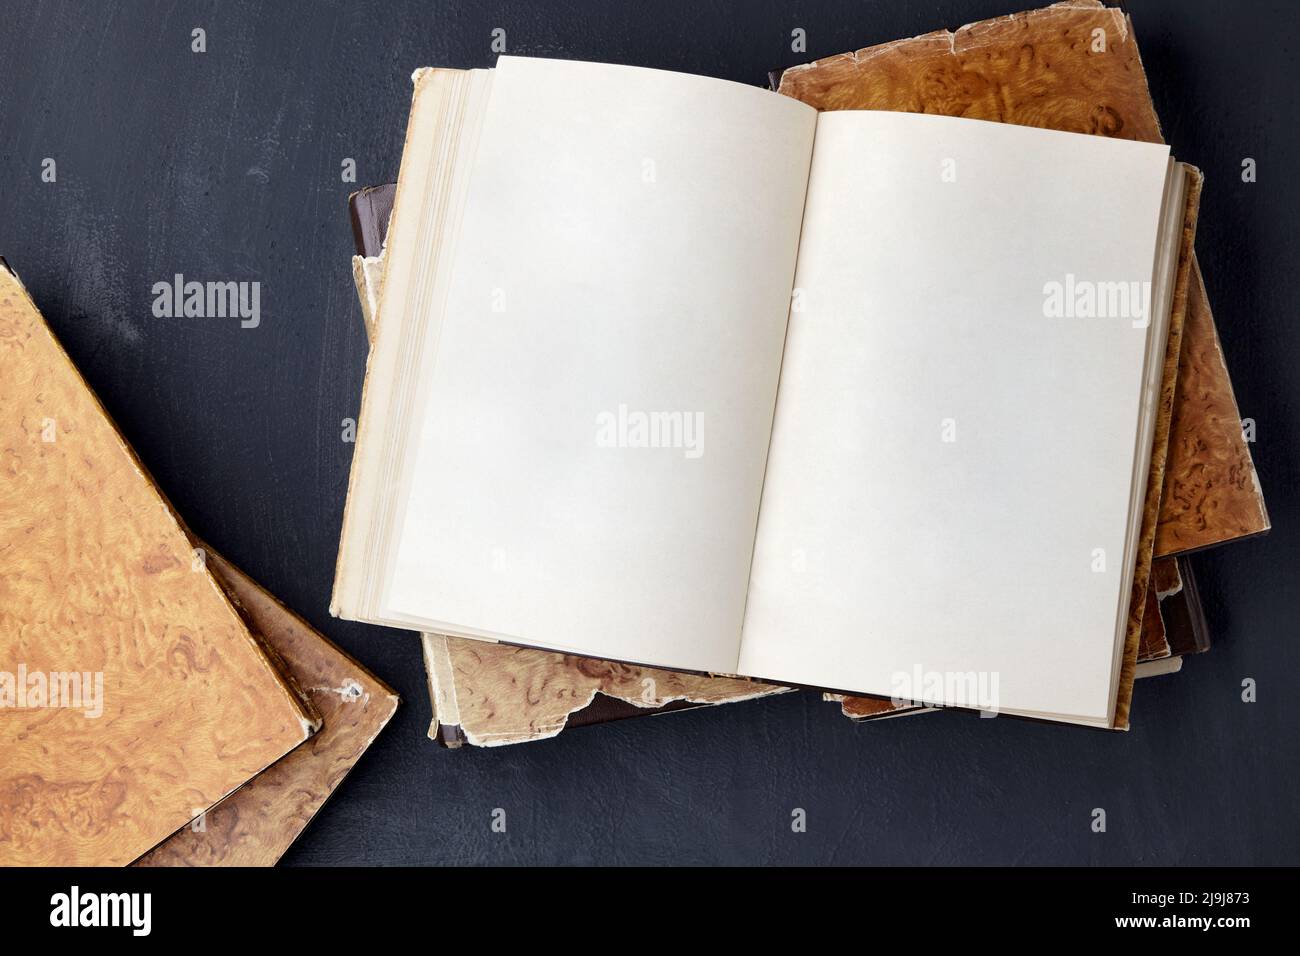 Vintage Notizbuch mit leeren Seiten liegt auf einem Stapel schäbiger Bücher auf einem schwarzen Betontisch Stockfoto